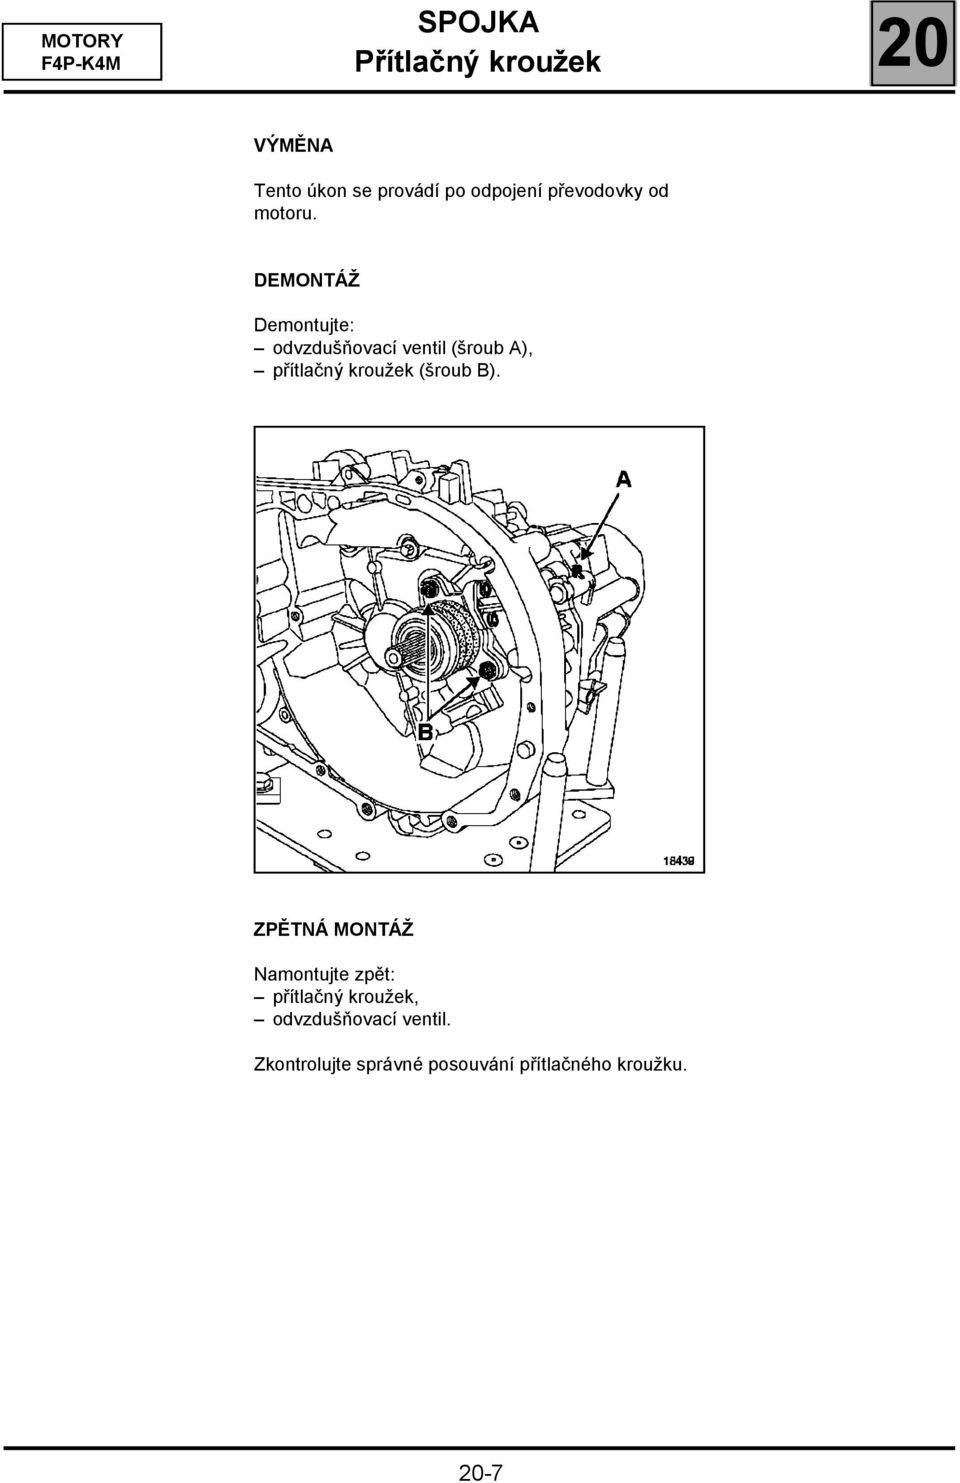 DEMONTÁŽ Demontujte: odvzdušňovací ventil (šroub A), přítlačný kroužek (šroub